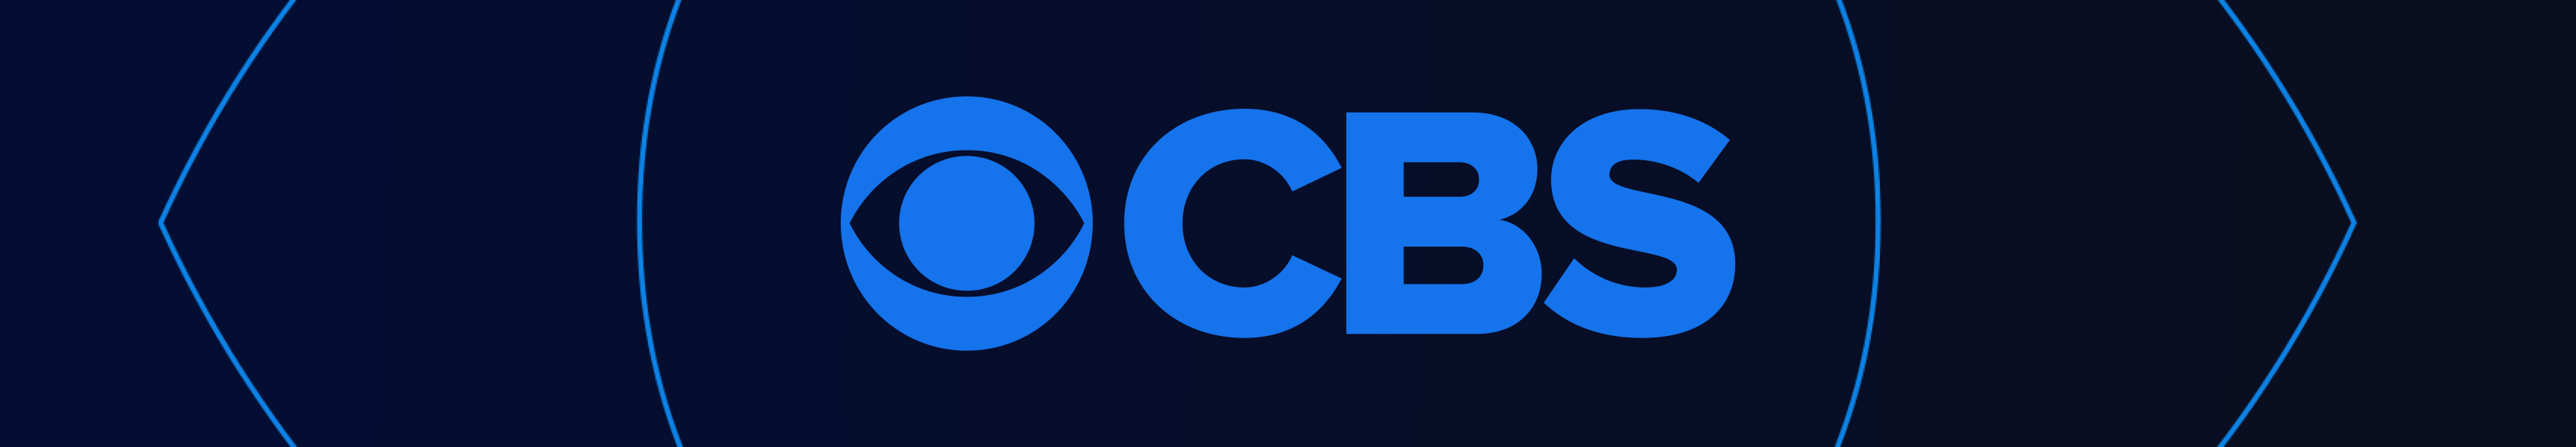 CBS Entertainment Coleccionables y juegos